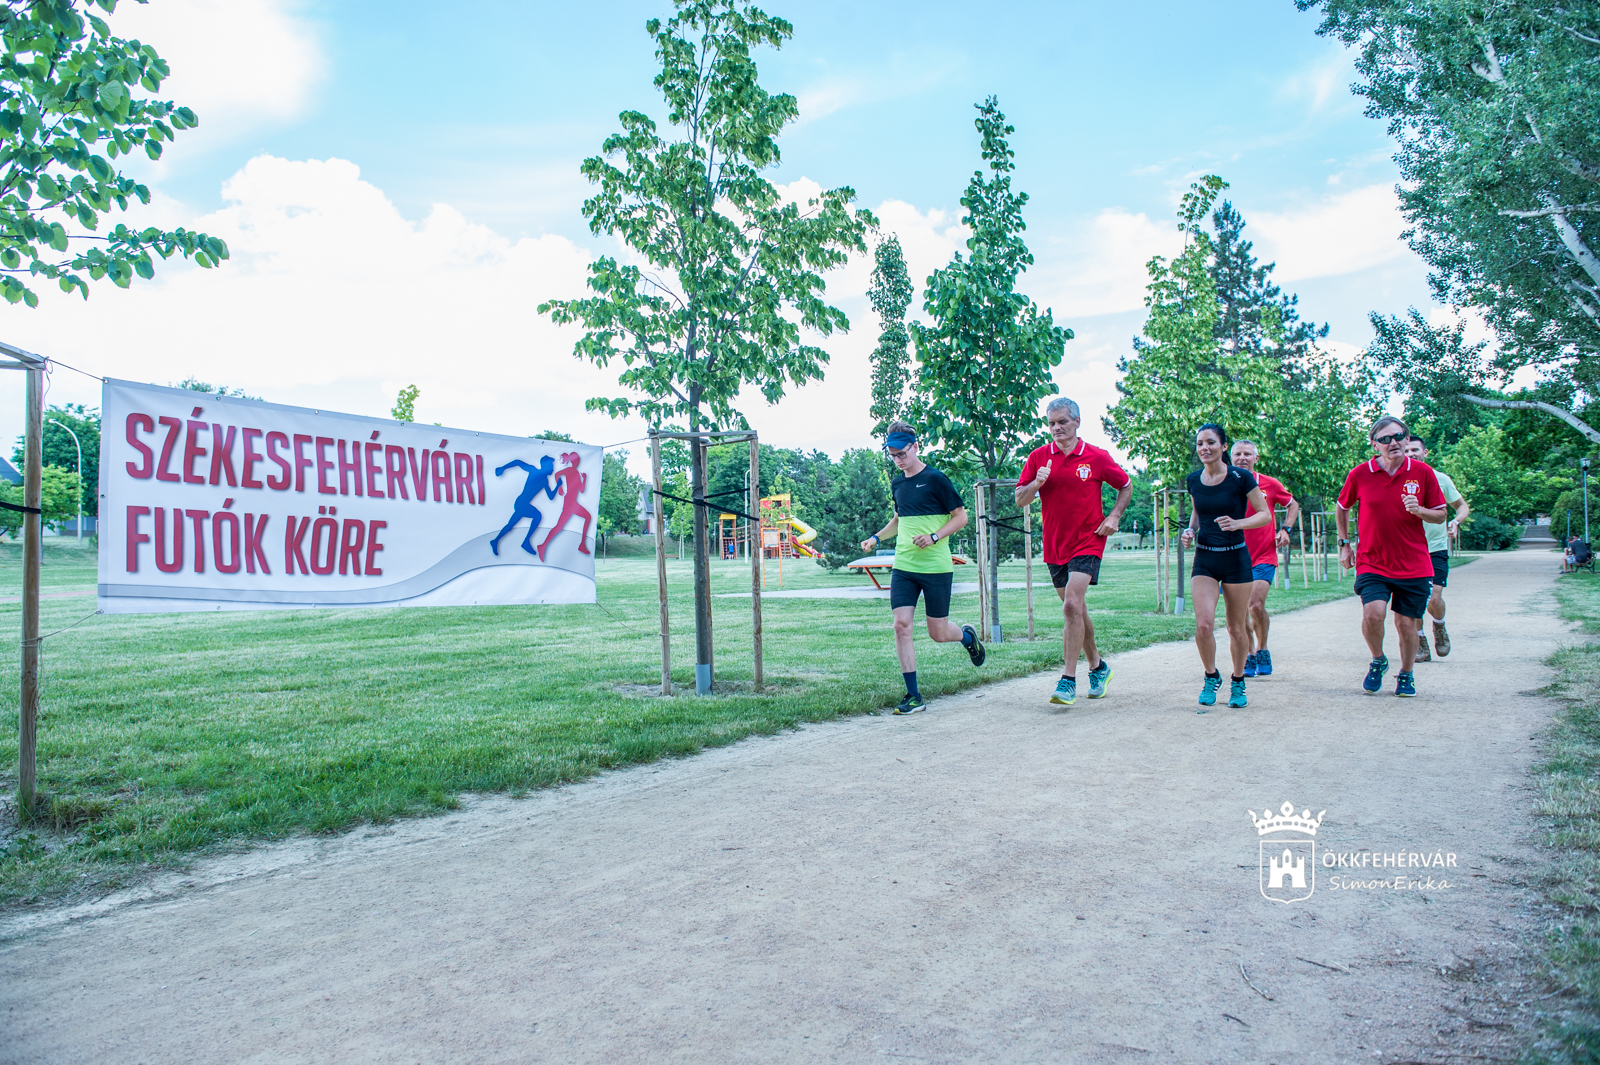 Két városrészben szervez ingyenes sportfoglalkozásokat idén is a Székesfehérvári Futók Köre